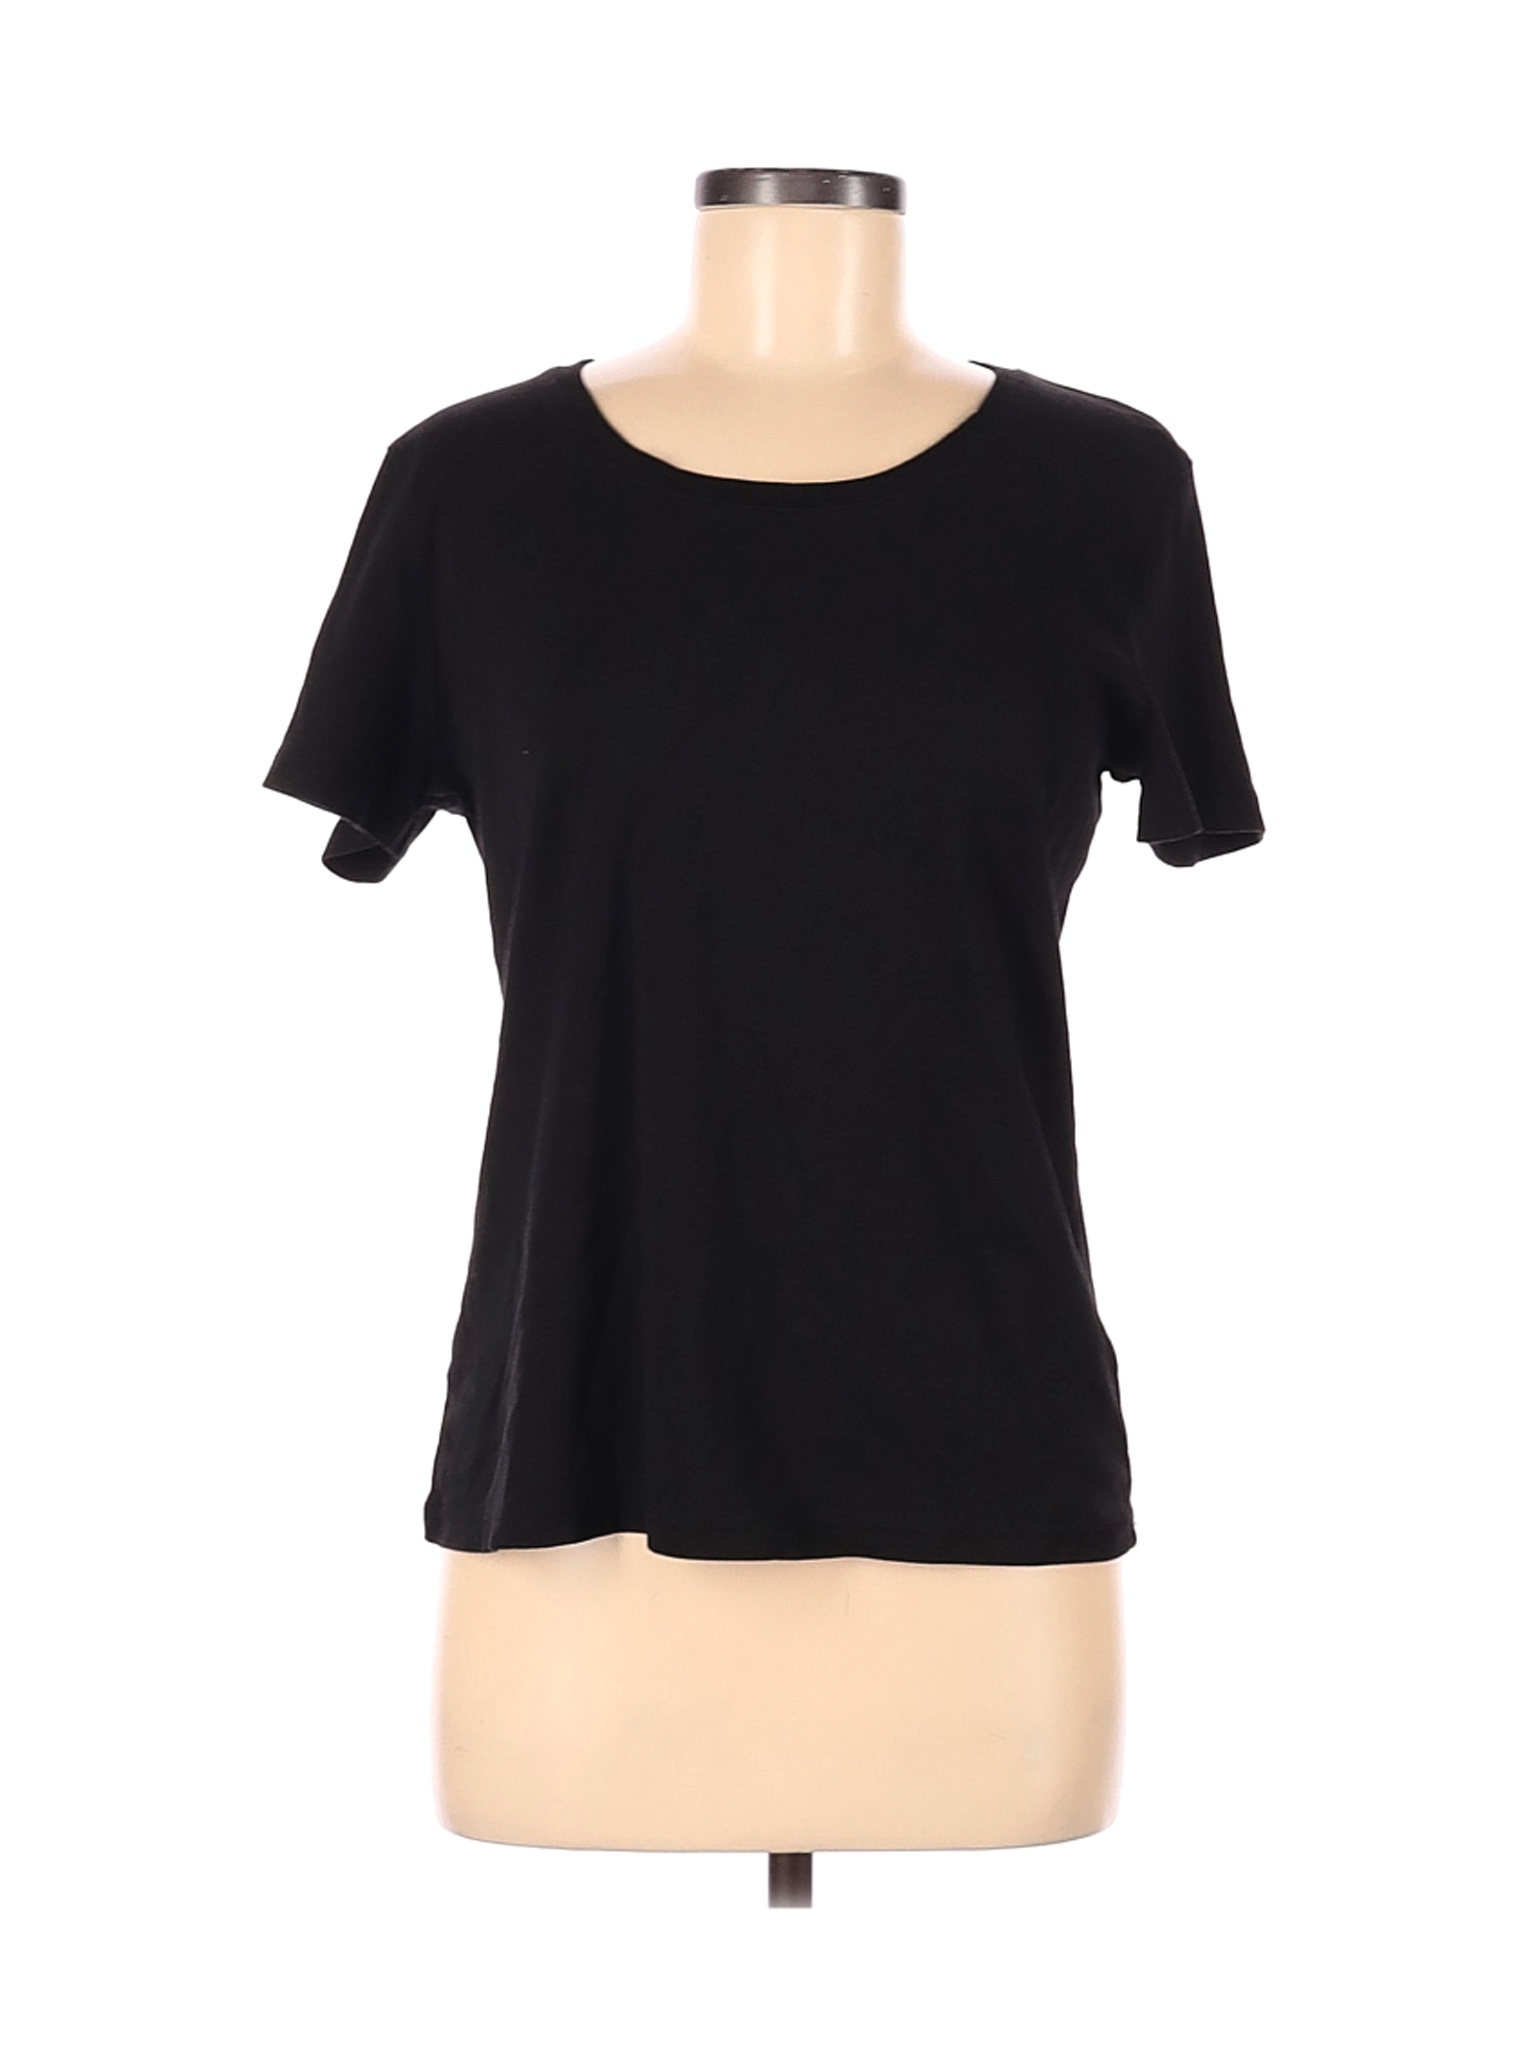 Christopher & Banks Women Black Short Sleeve T-Shirt L | eBay